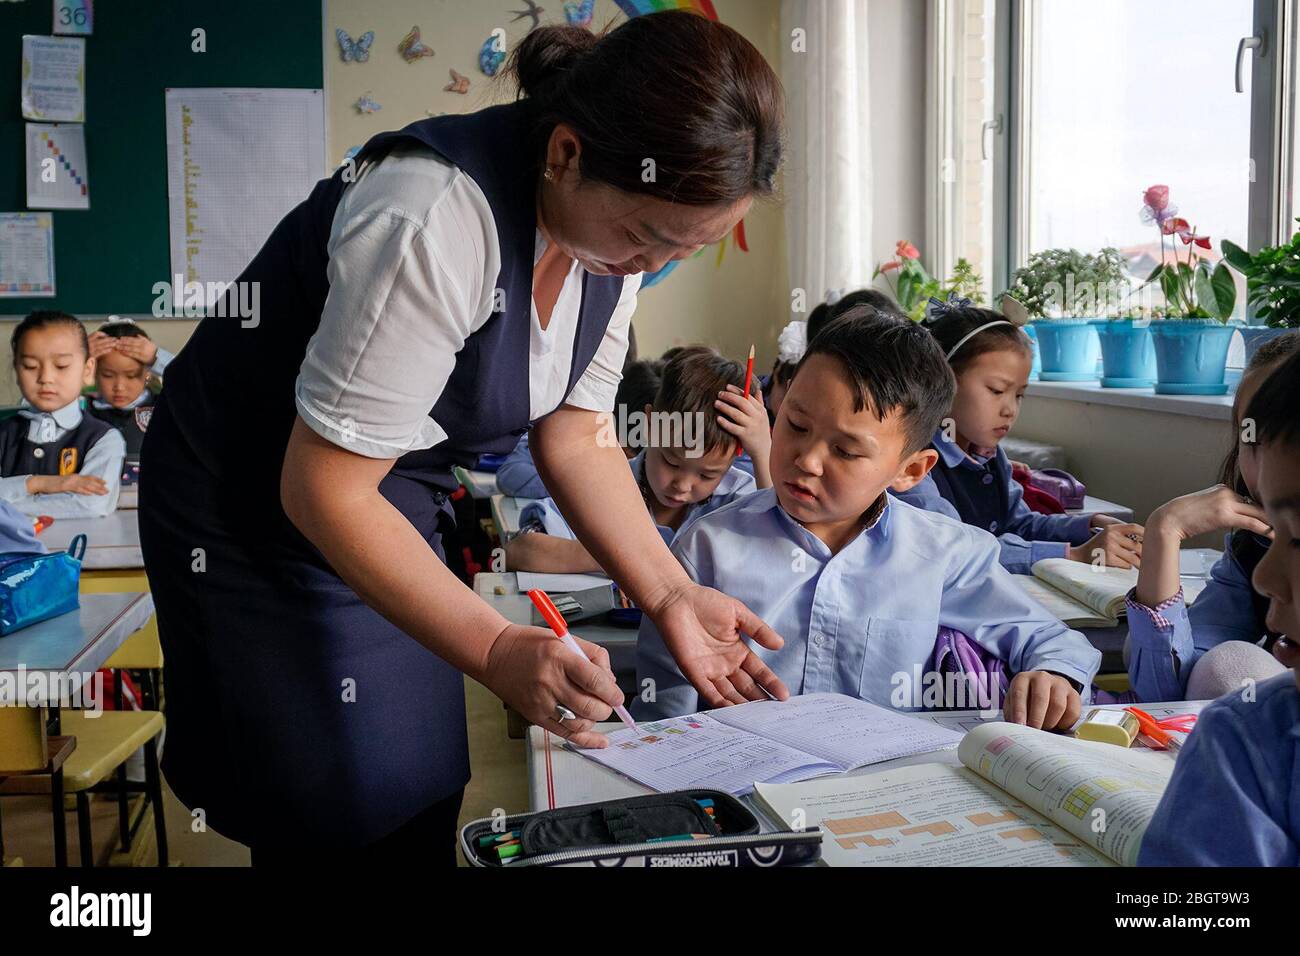 Der Lehrer Nyamtseren Chuluun hilft einem Schüler der dritten Klasse bei seiner Mathearbeit in Ulaanbaatar, Mongolei. Nyamtseren hat über 40 Studenten in ihrer Klasse, was es schwierig für sie macht, jedem einzelnen Aufmerksamkeit zu schenken. (Myagmarsuren Battur, GPJ Mongolei) Stockfoto